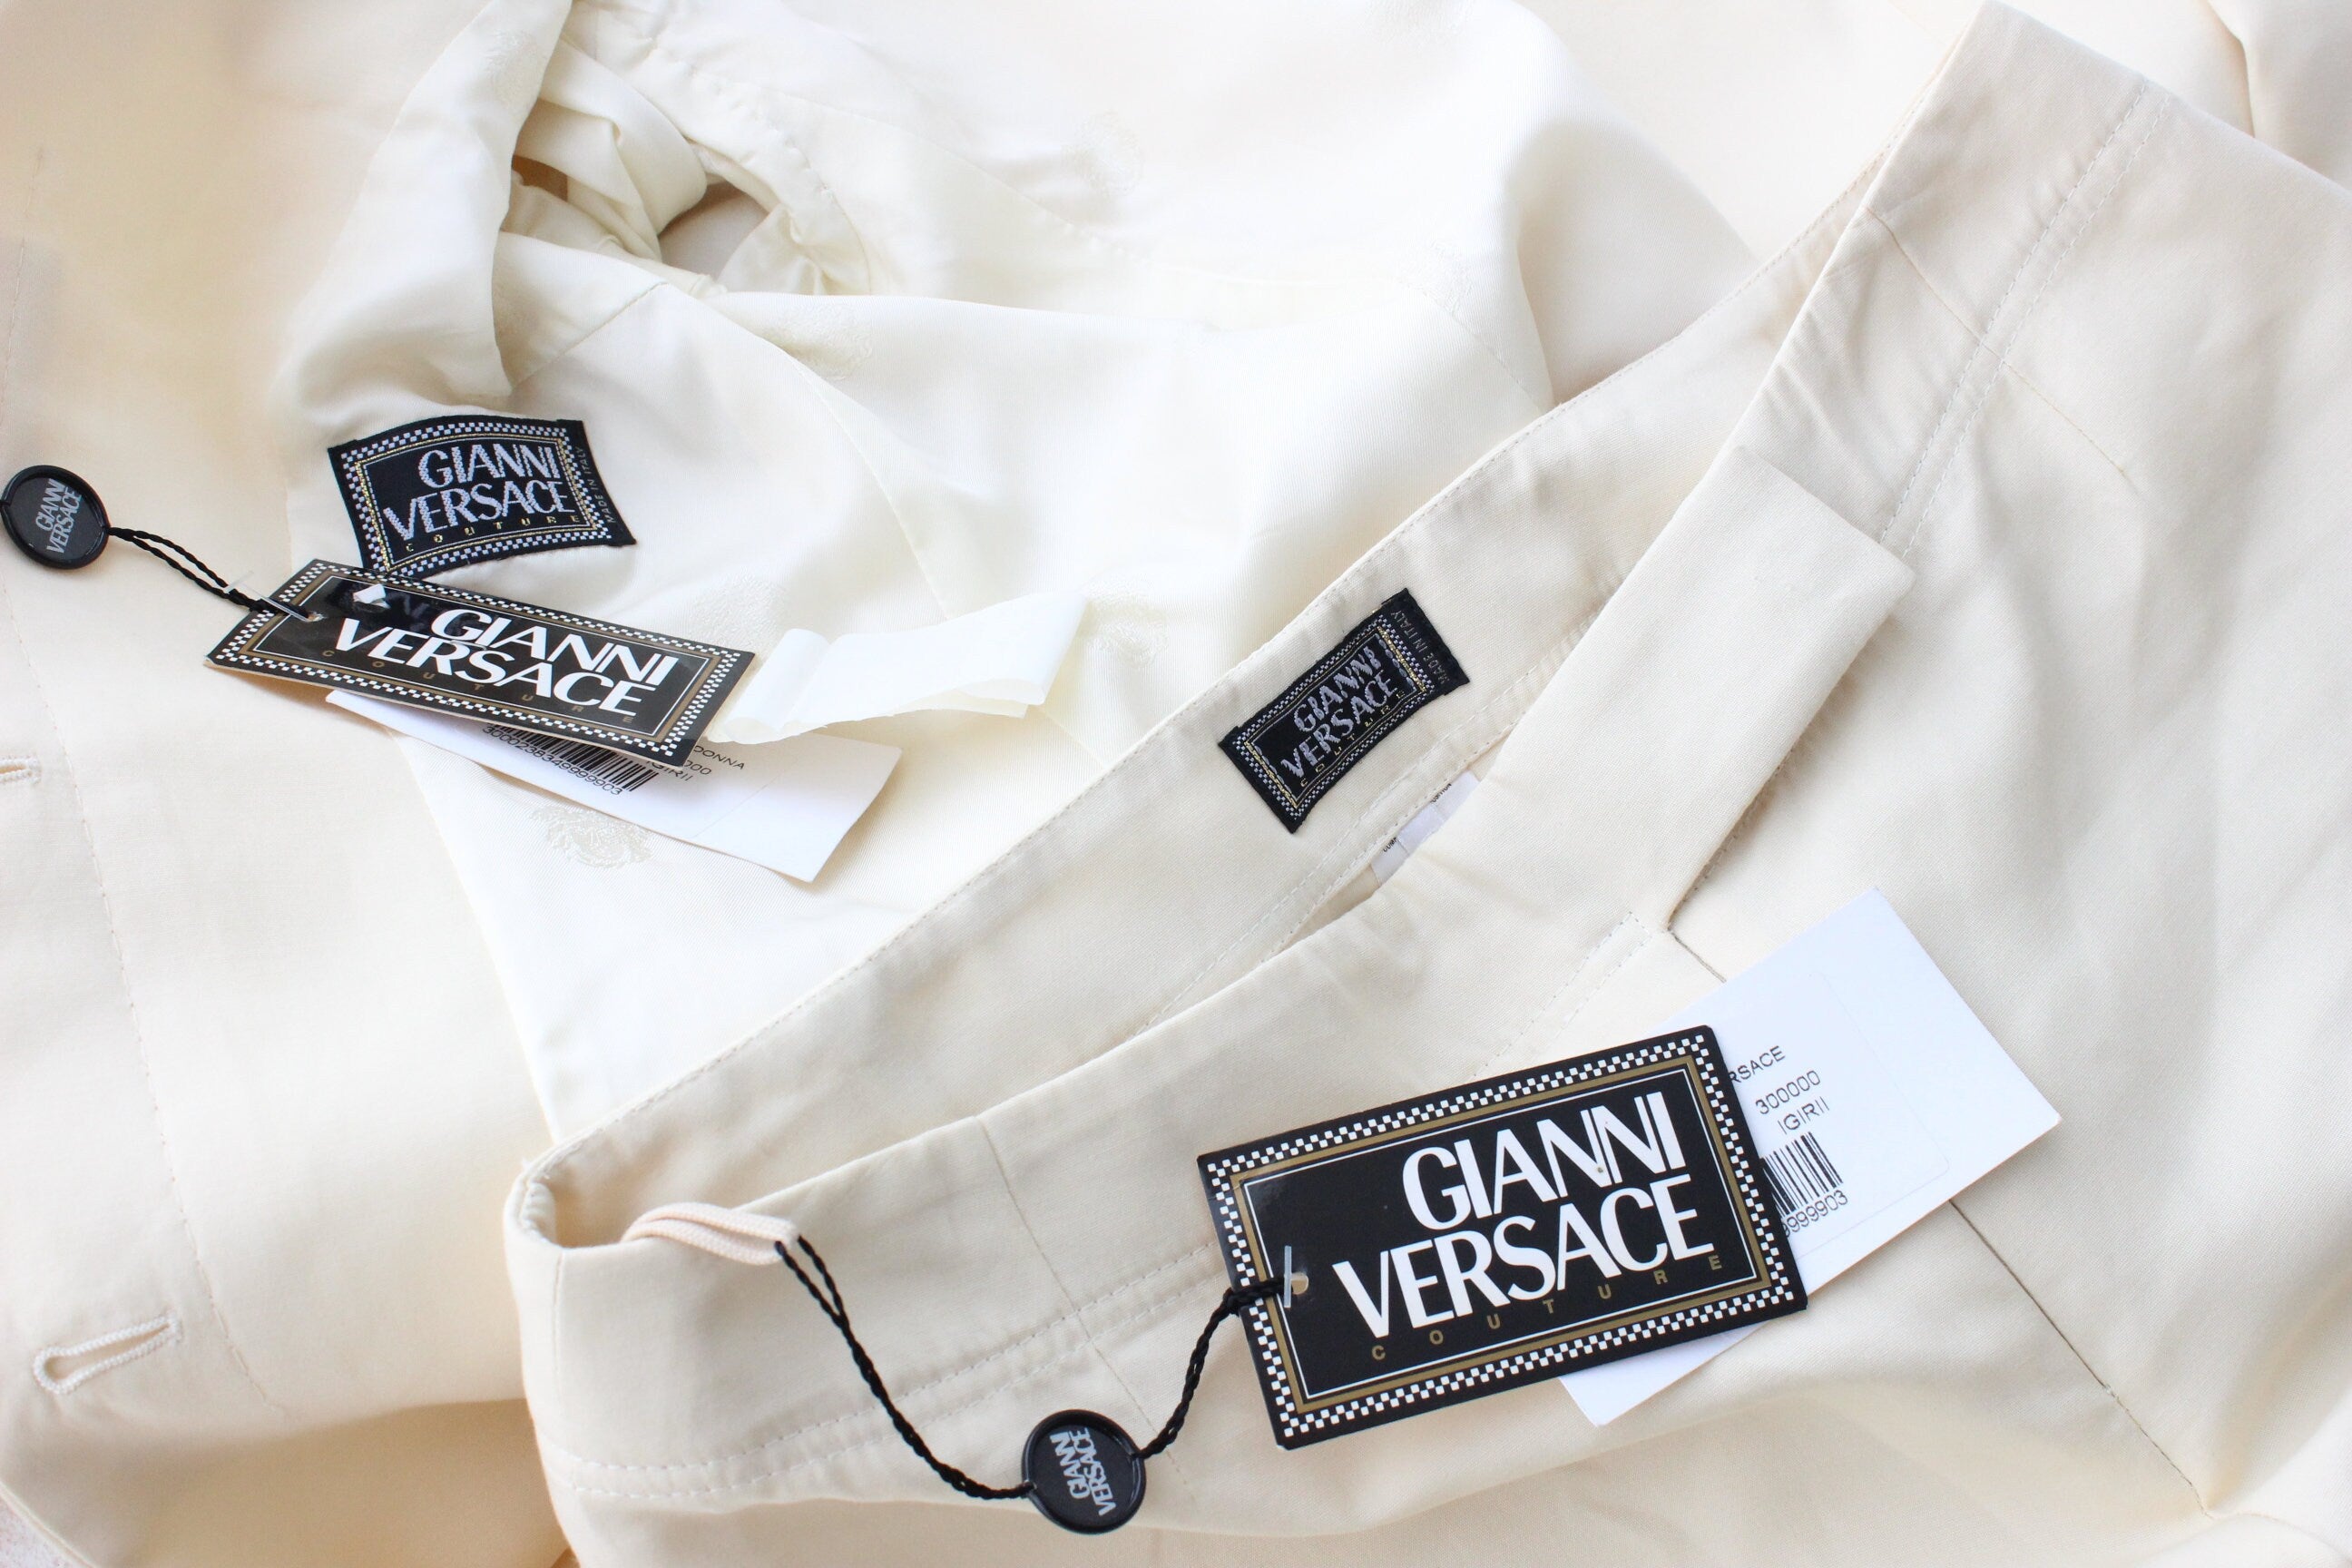 1999 Gianni Versace Couture Cream Cotton Bridal Pant Suit